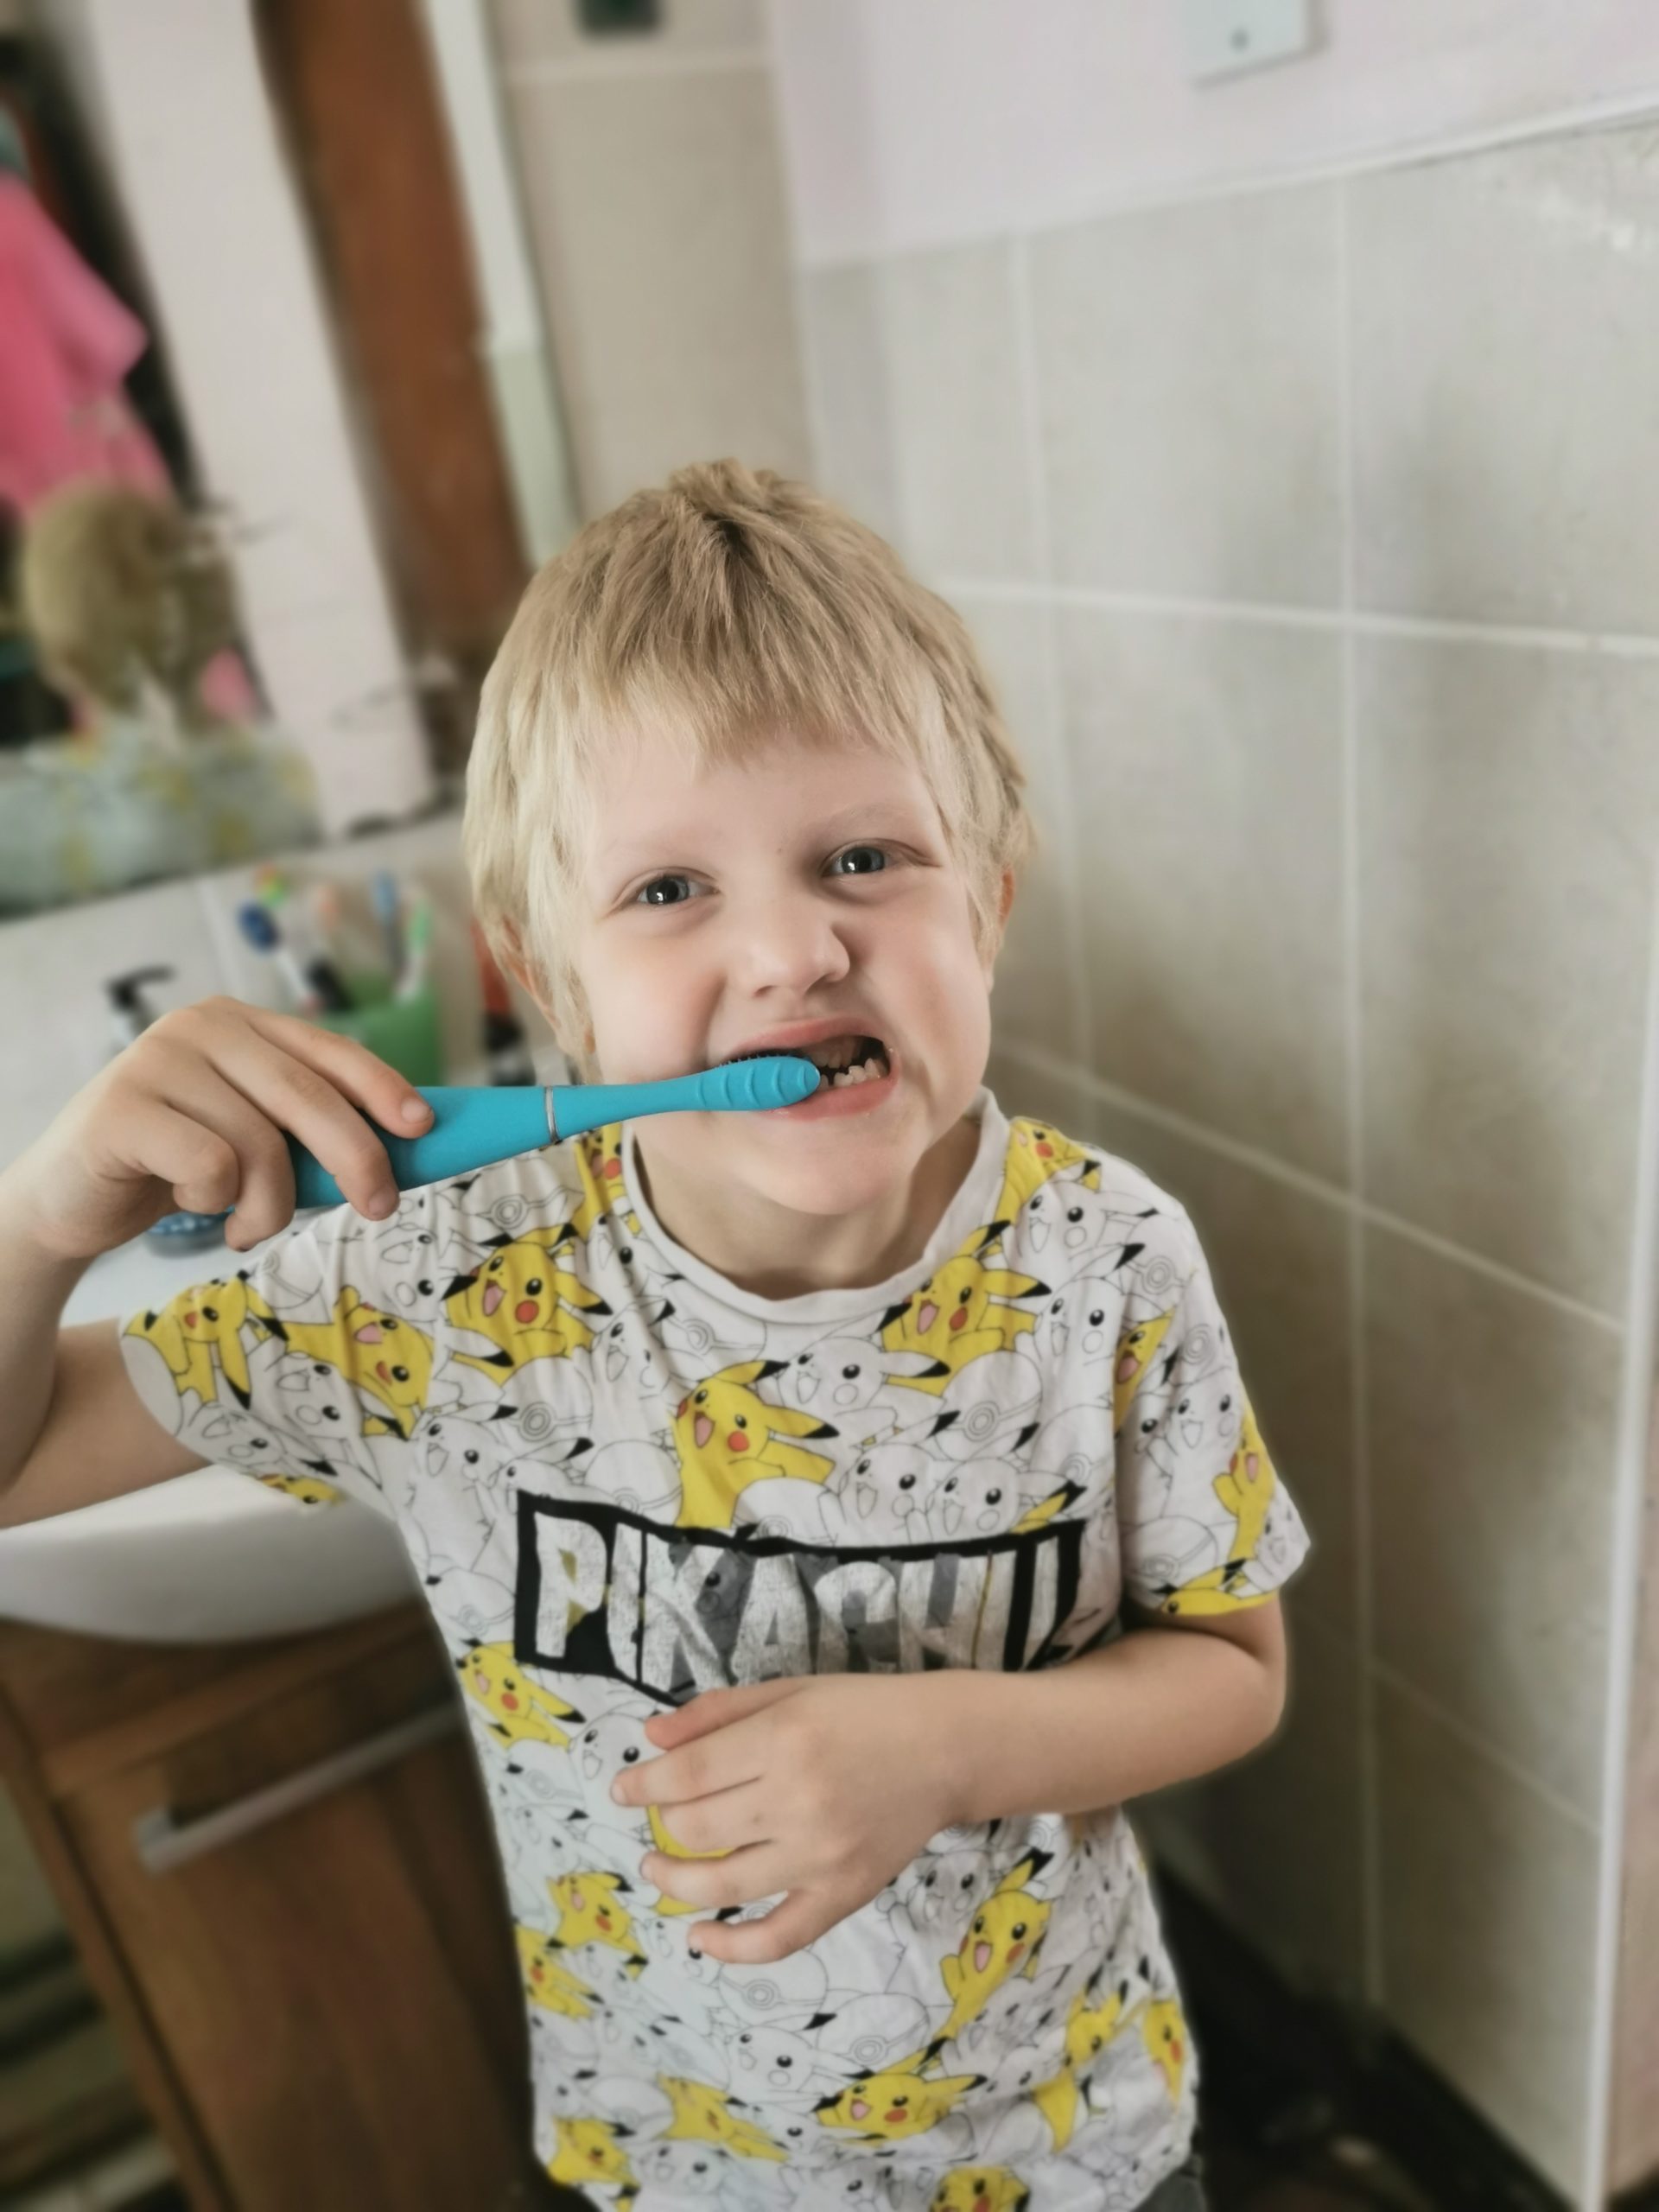 making toothbrushing fun